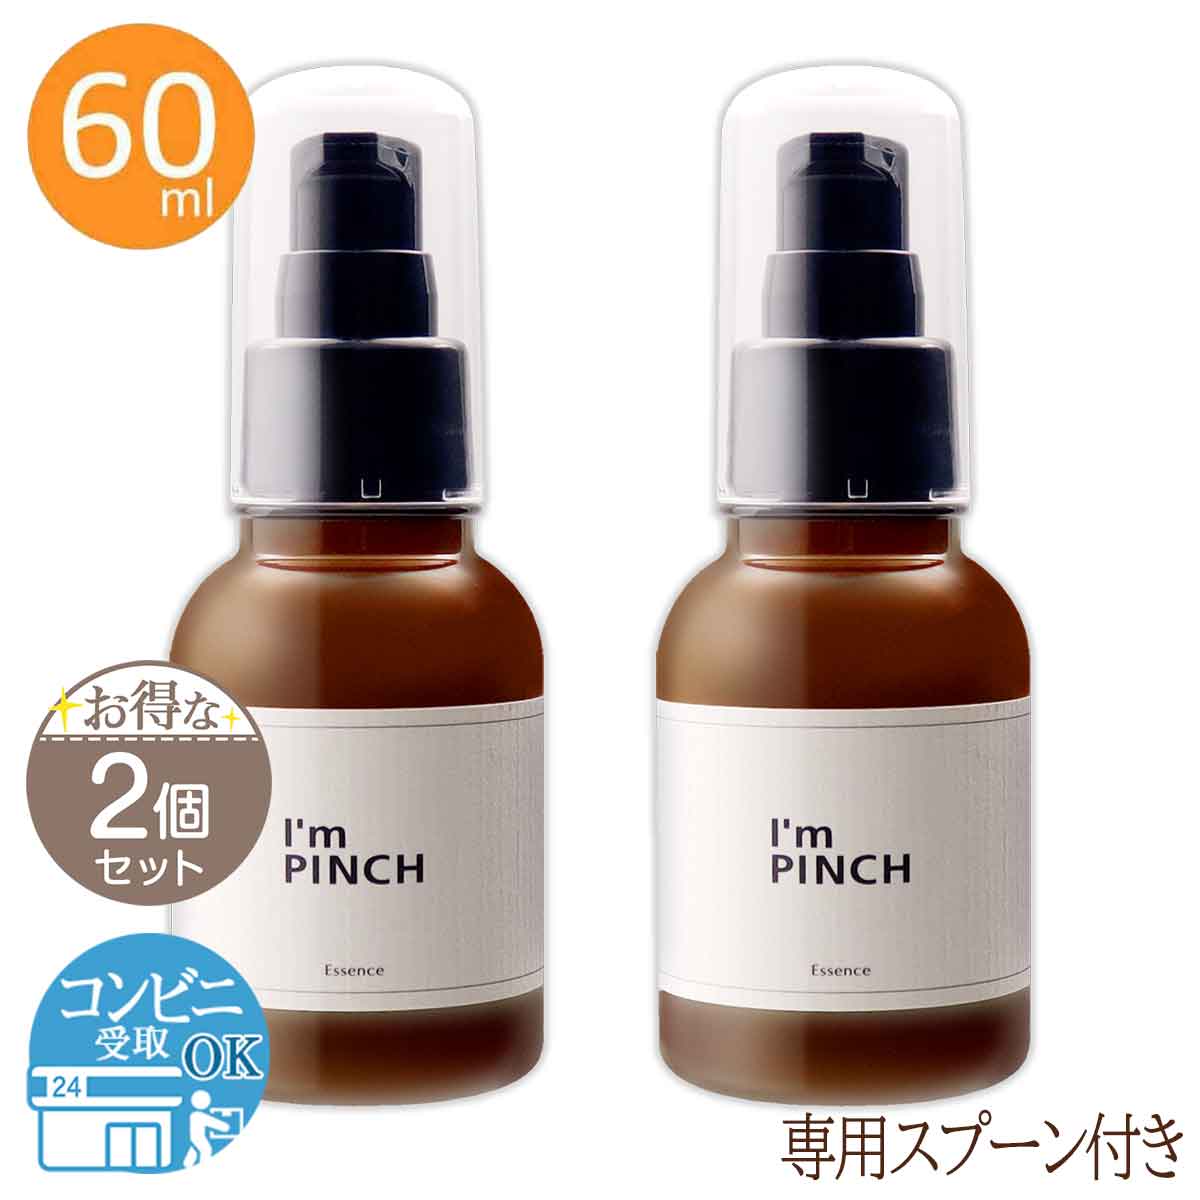 スキンケア/基礎化粧品アイムピンチ 美容液 60ml